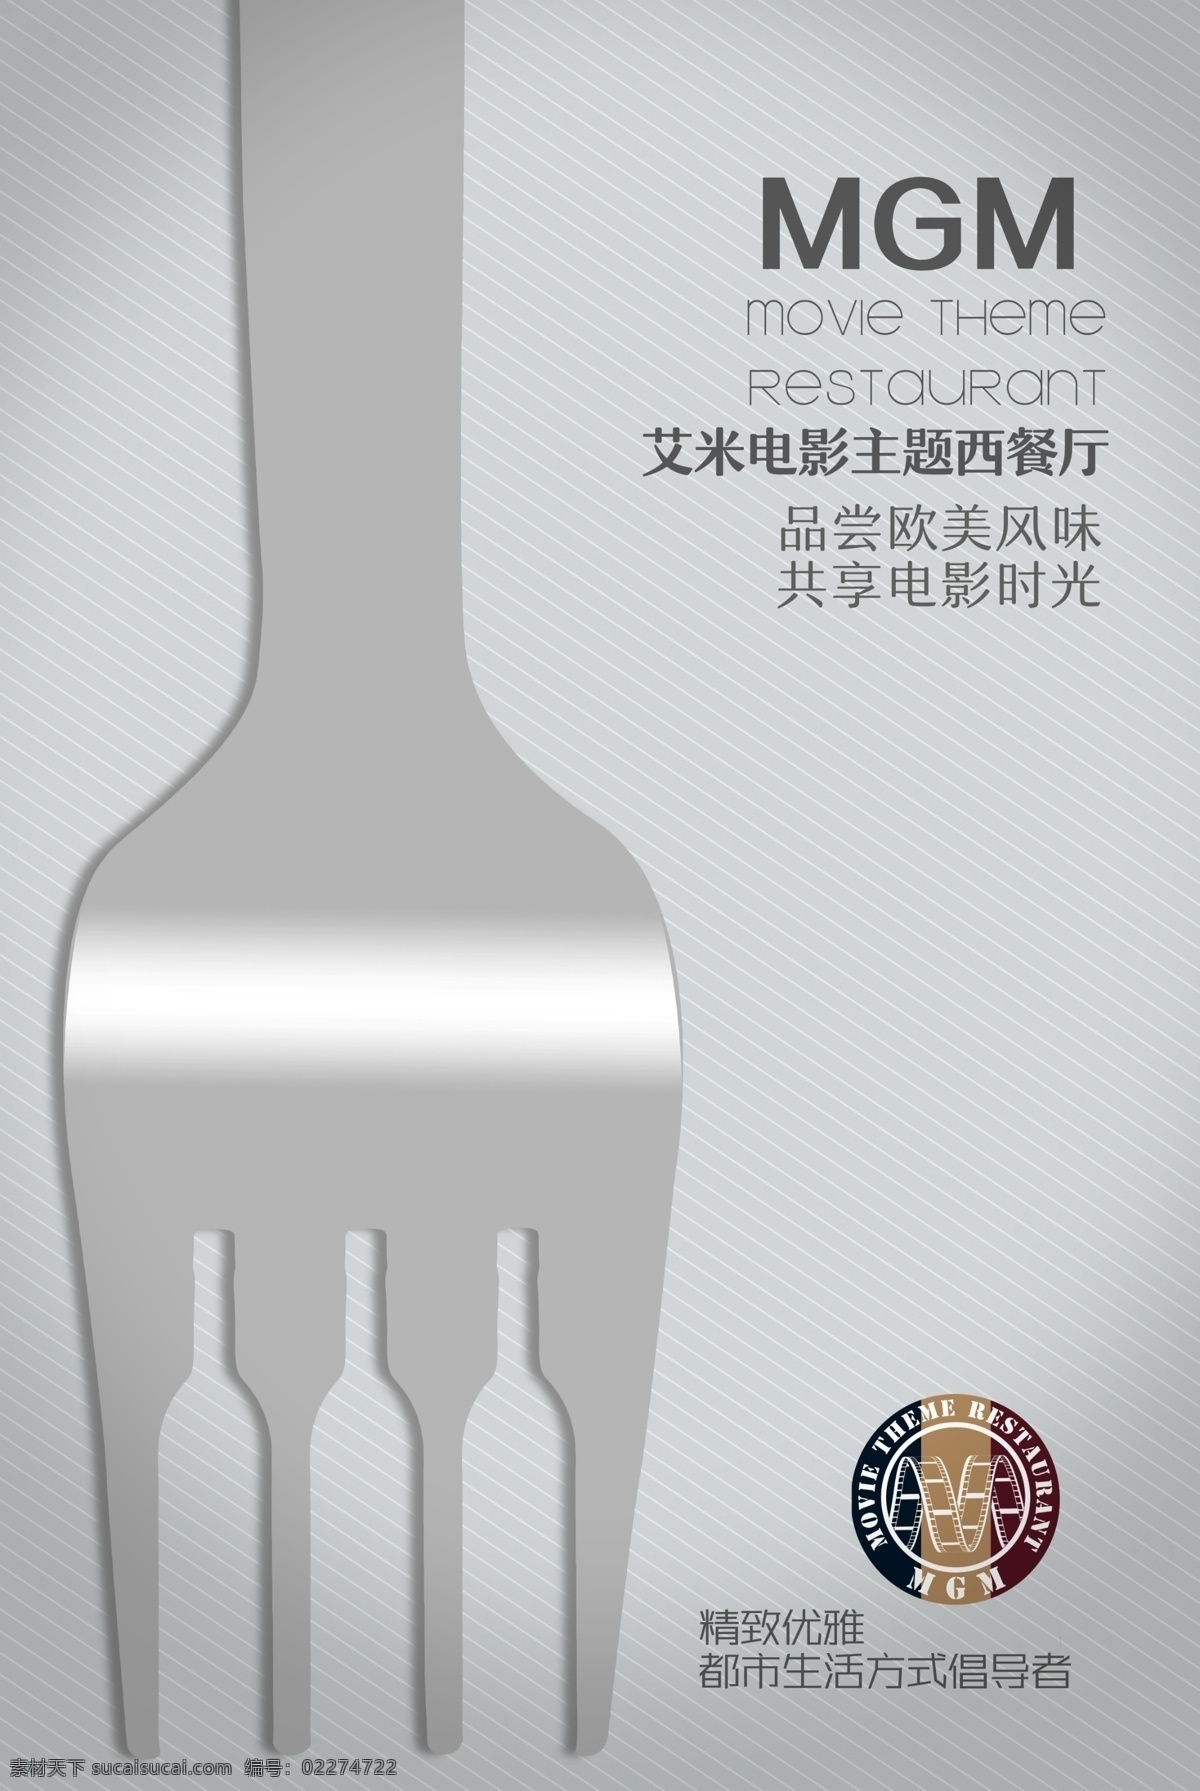 西餐厅海报 餐厅海报素材 叉子 酒瓶 艾米电影街 电影主题餐厅 时尚底纹 灰色